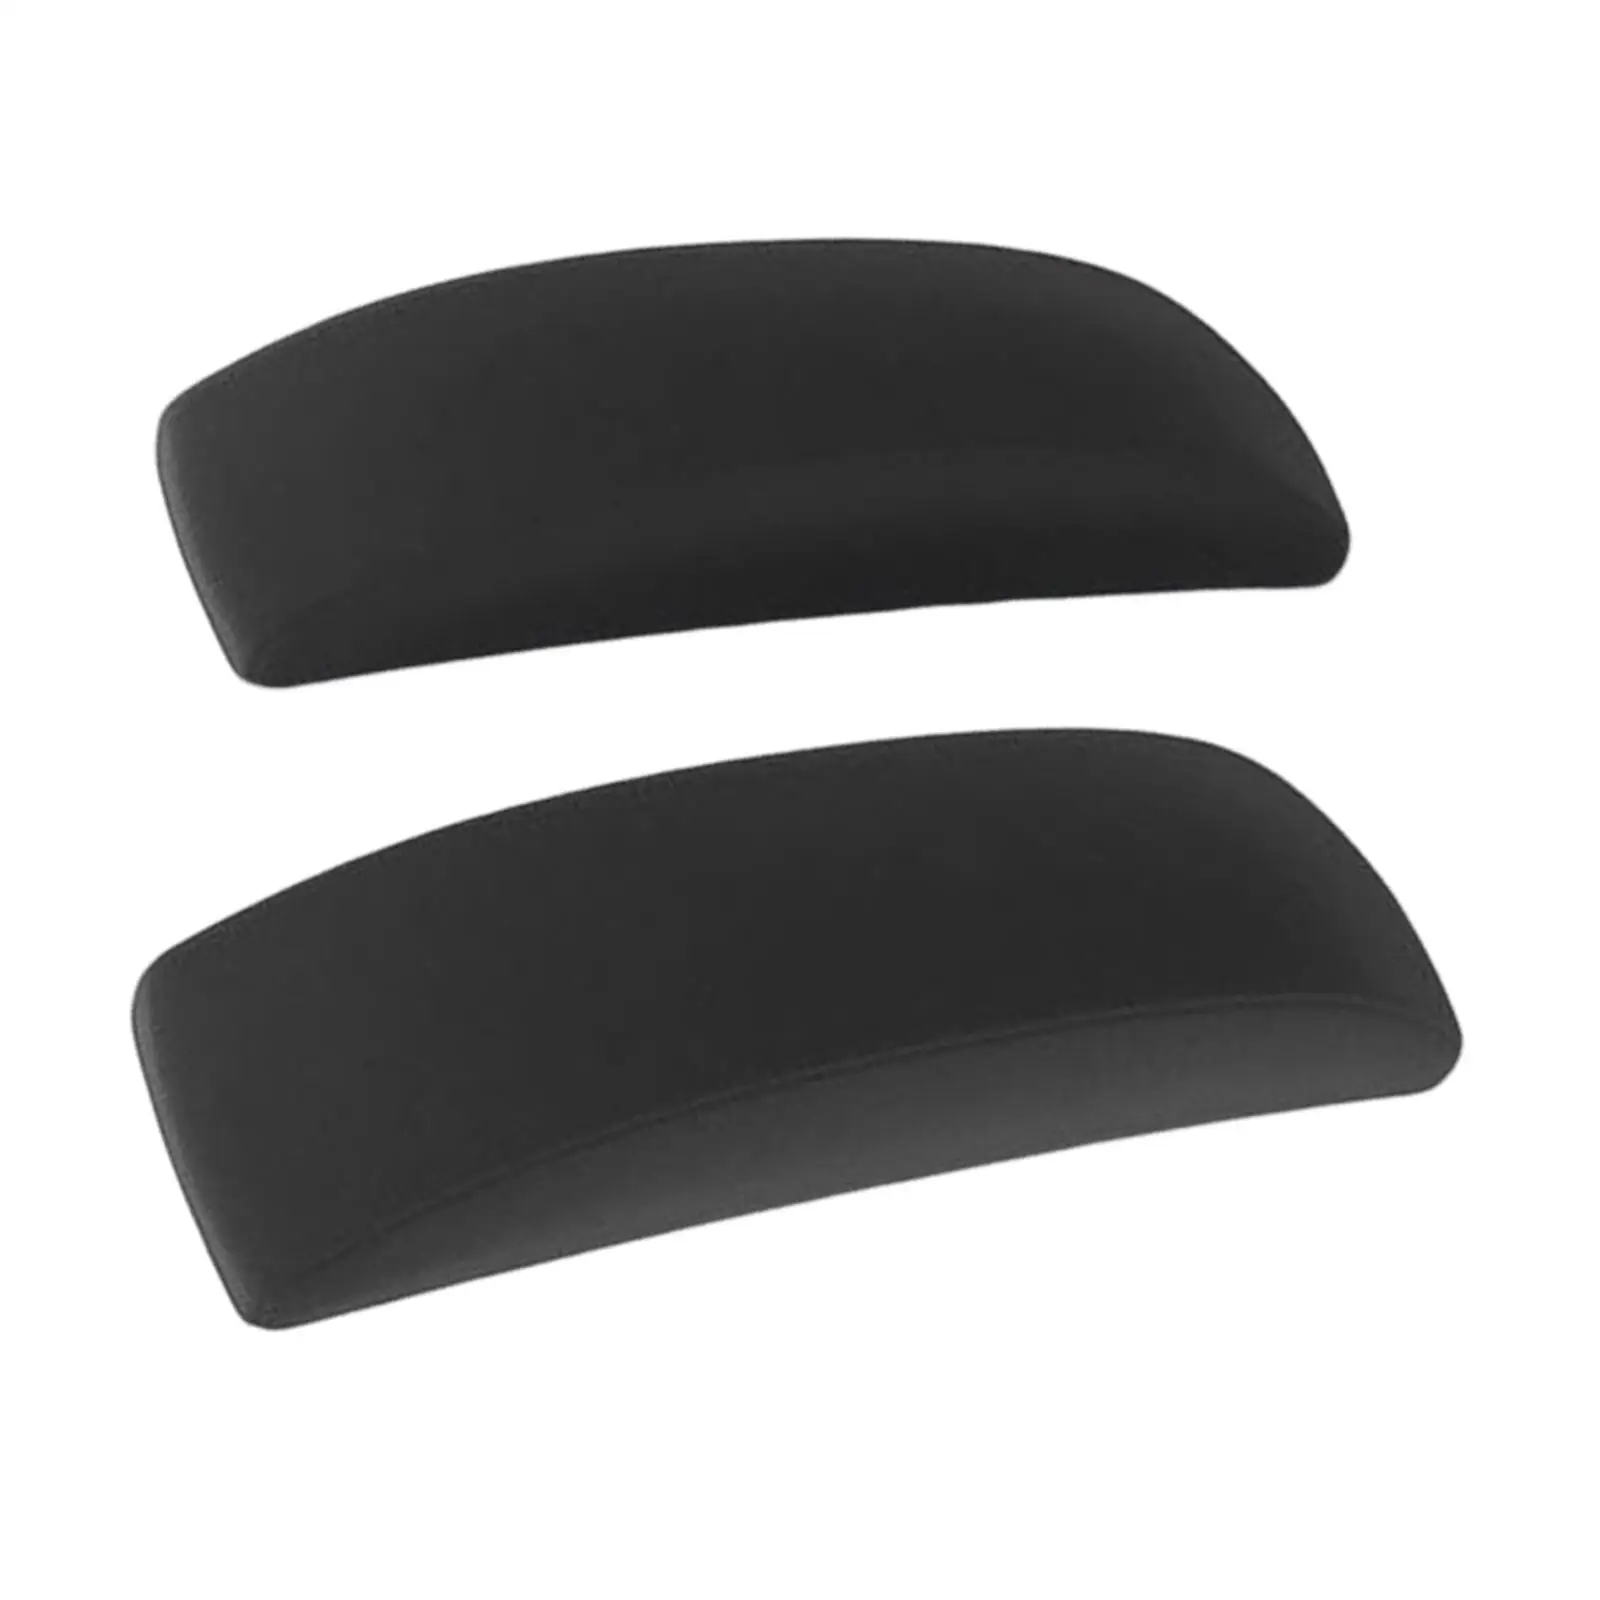 2Pcs Chair Armrest Pads, Reusable Washable Breathable Portable Removable Soft